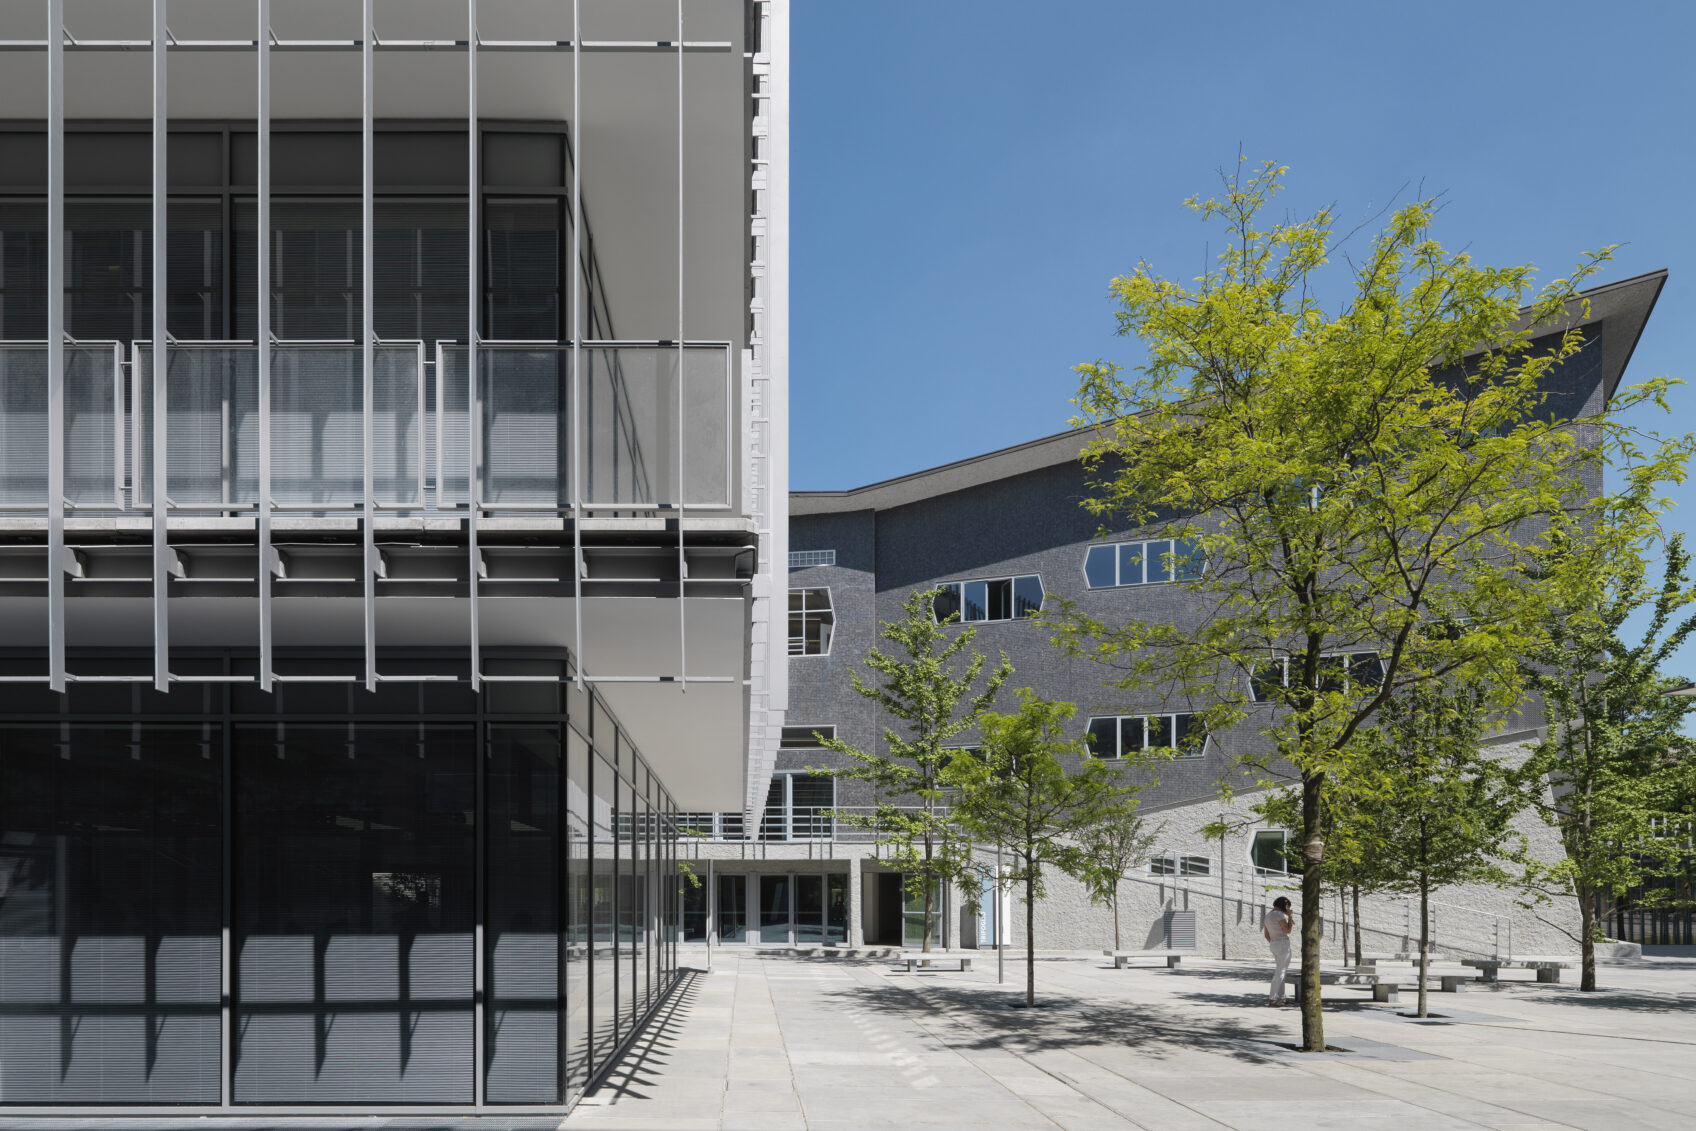 Dettaglio facciata ed aree verdi nuovo Campus Leonardo facoltà di Architettura Politecnico di Milano